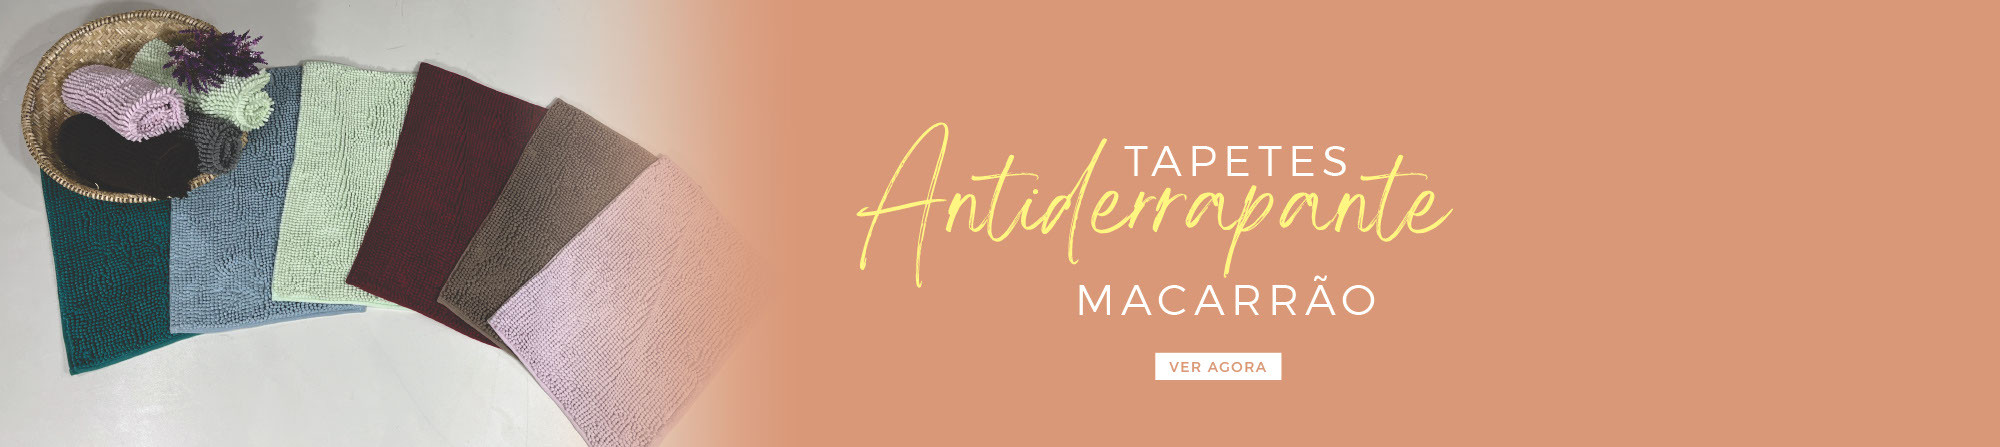 Banner Tapete Macarrão - Desktop